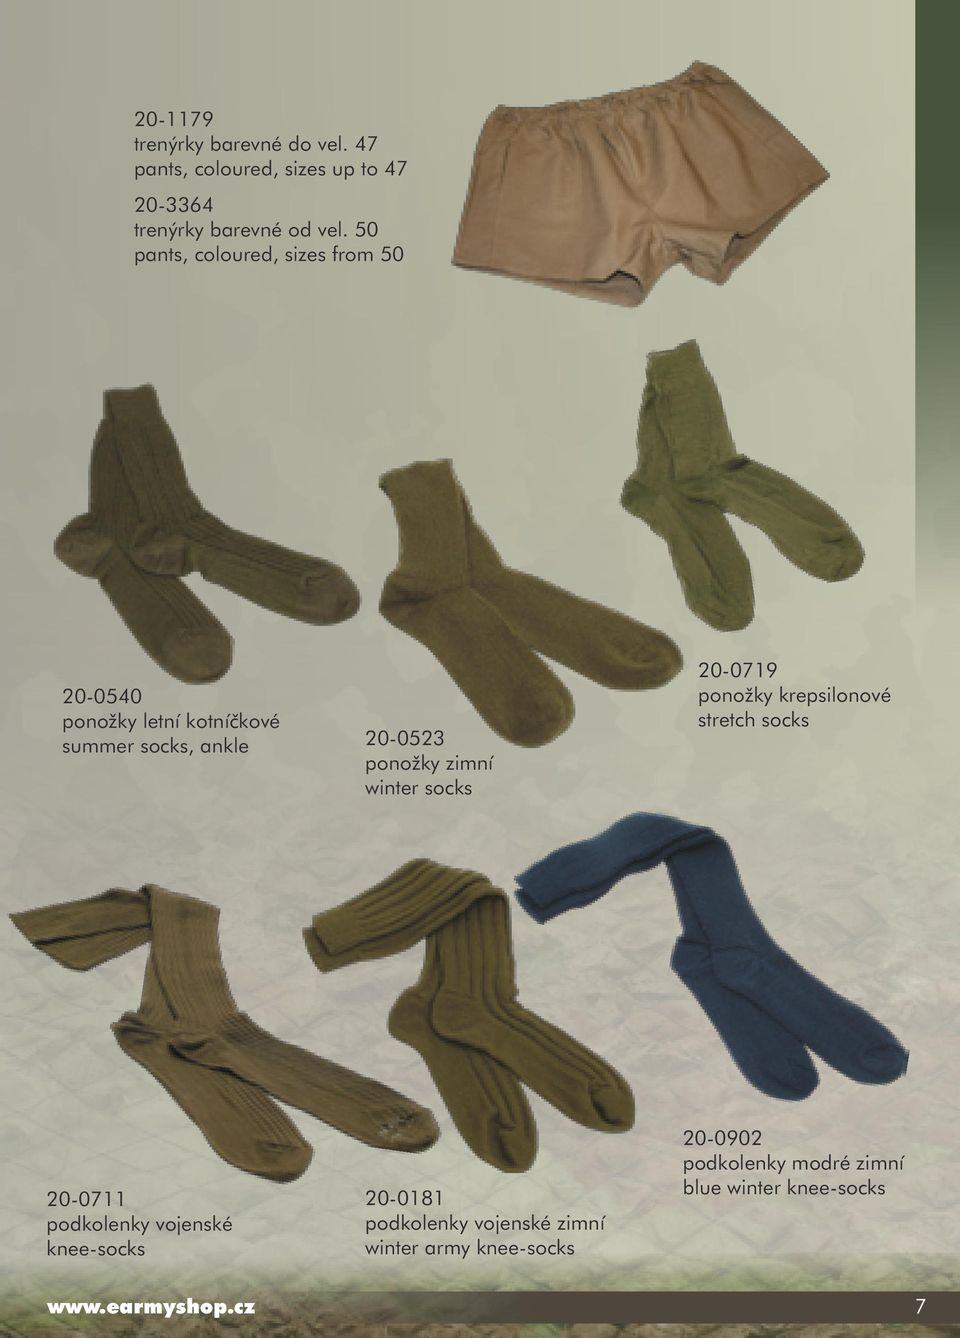 winter socks 20-0719 ponožky krepsilonové stretch socks 20-0711 podkolenky vojenské knee-socks 20-0181